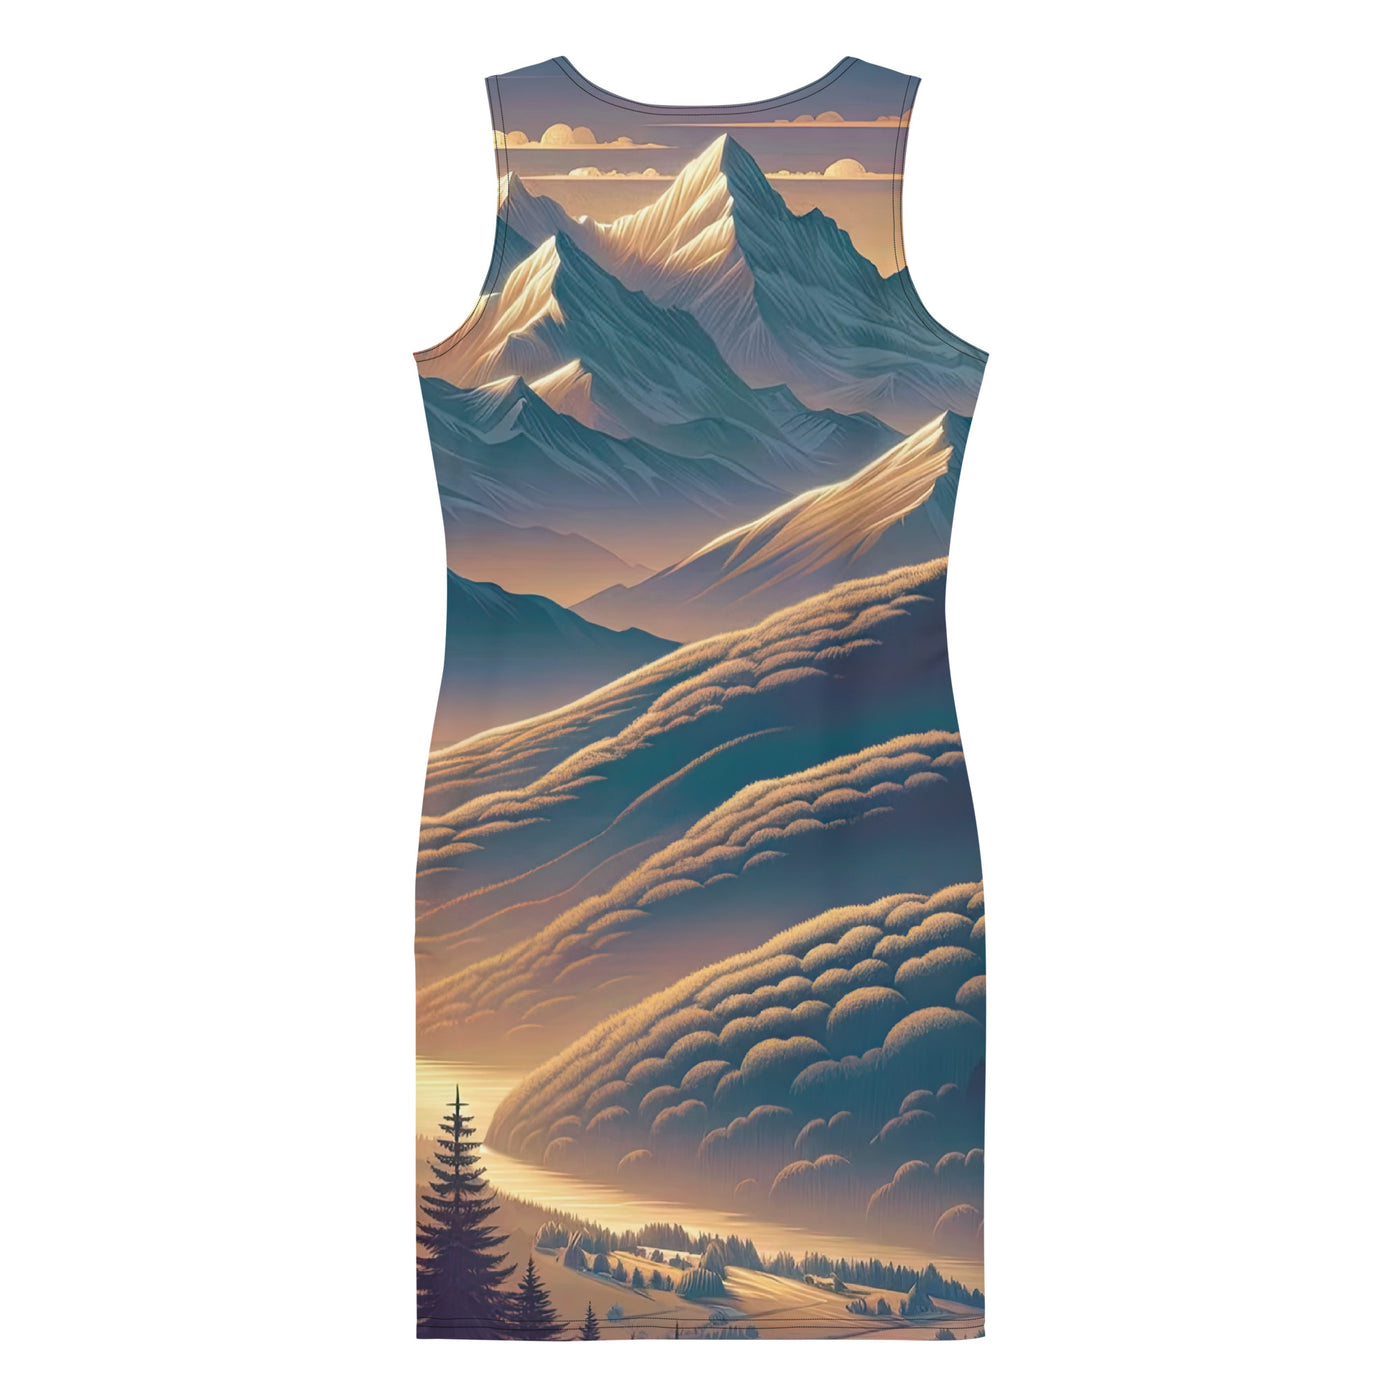 Alpen-Morgendämmerung, erste Sonnenstrahlen auf Schneegipfeln - Langes Damen Kleid (All-Over Print) berge xxx yyy zzz